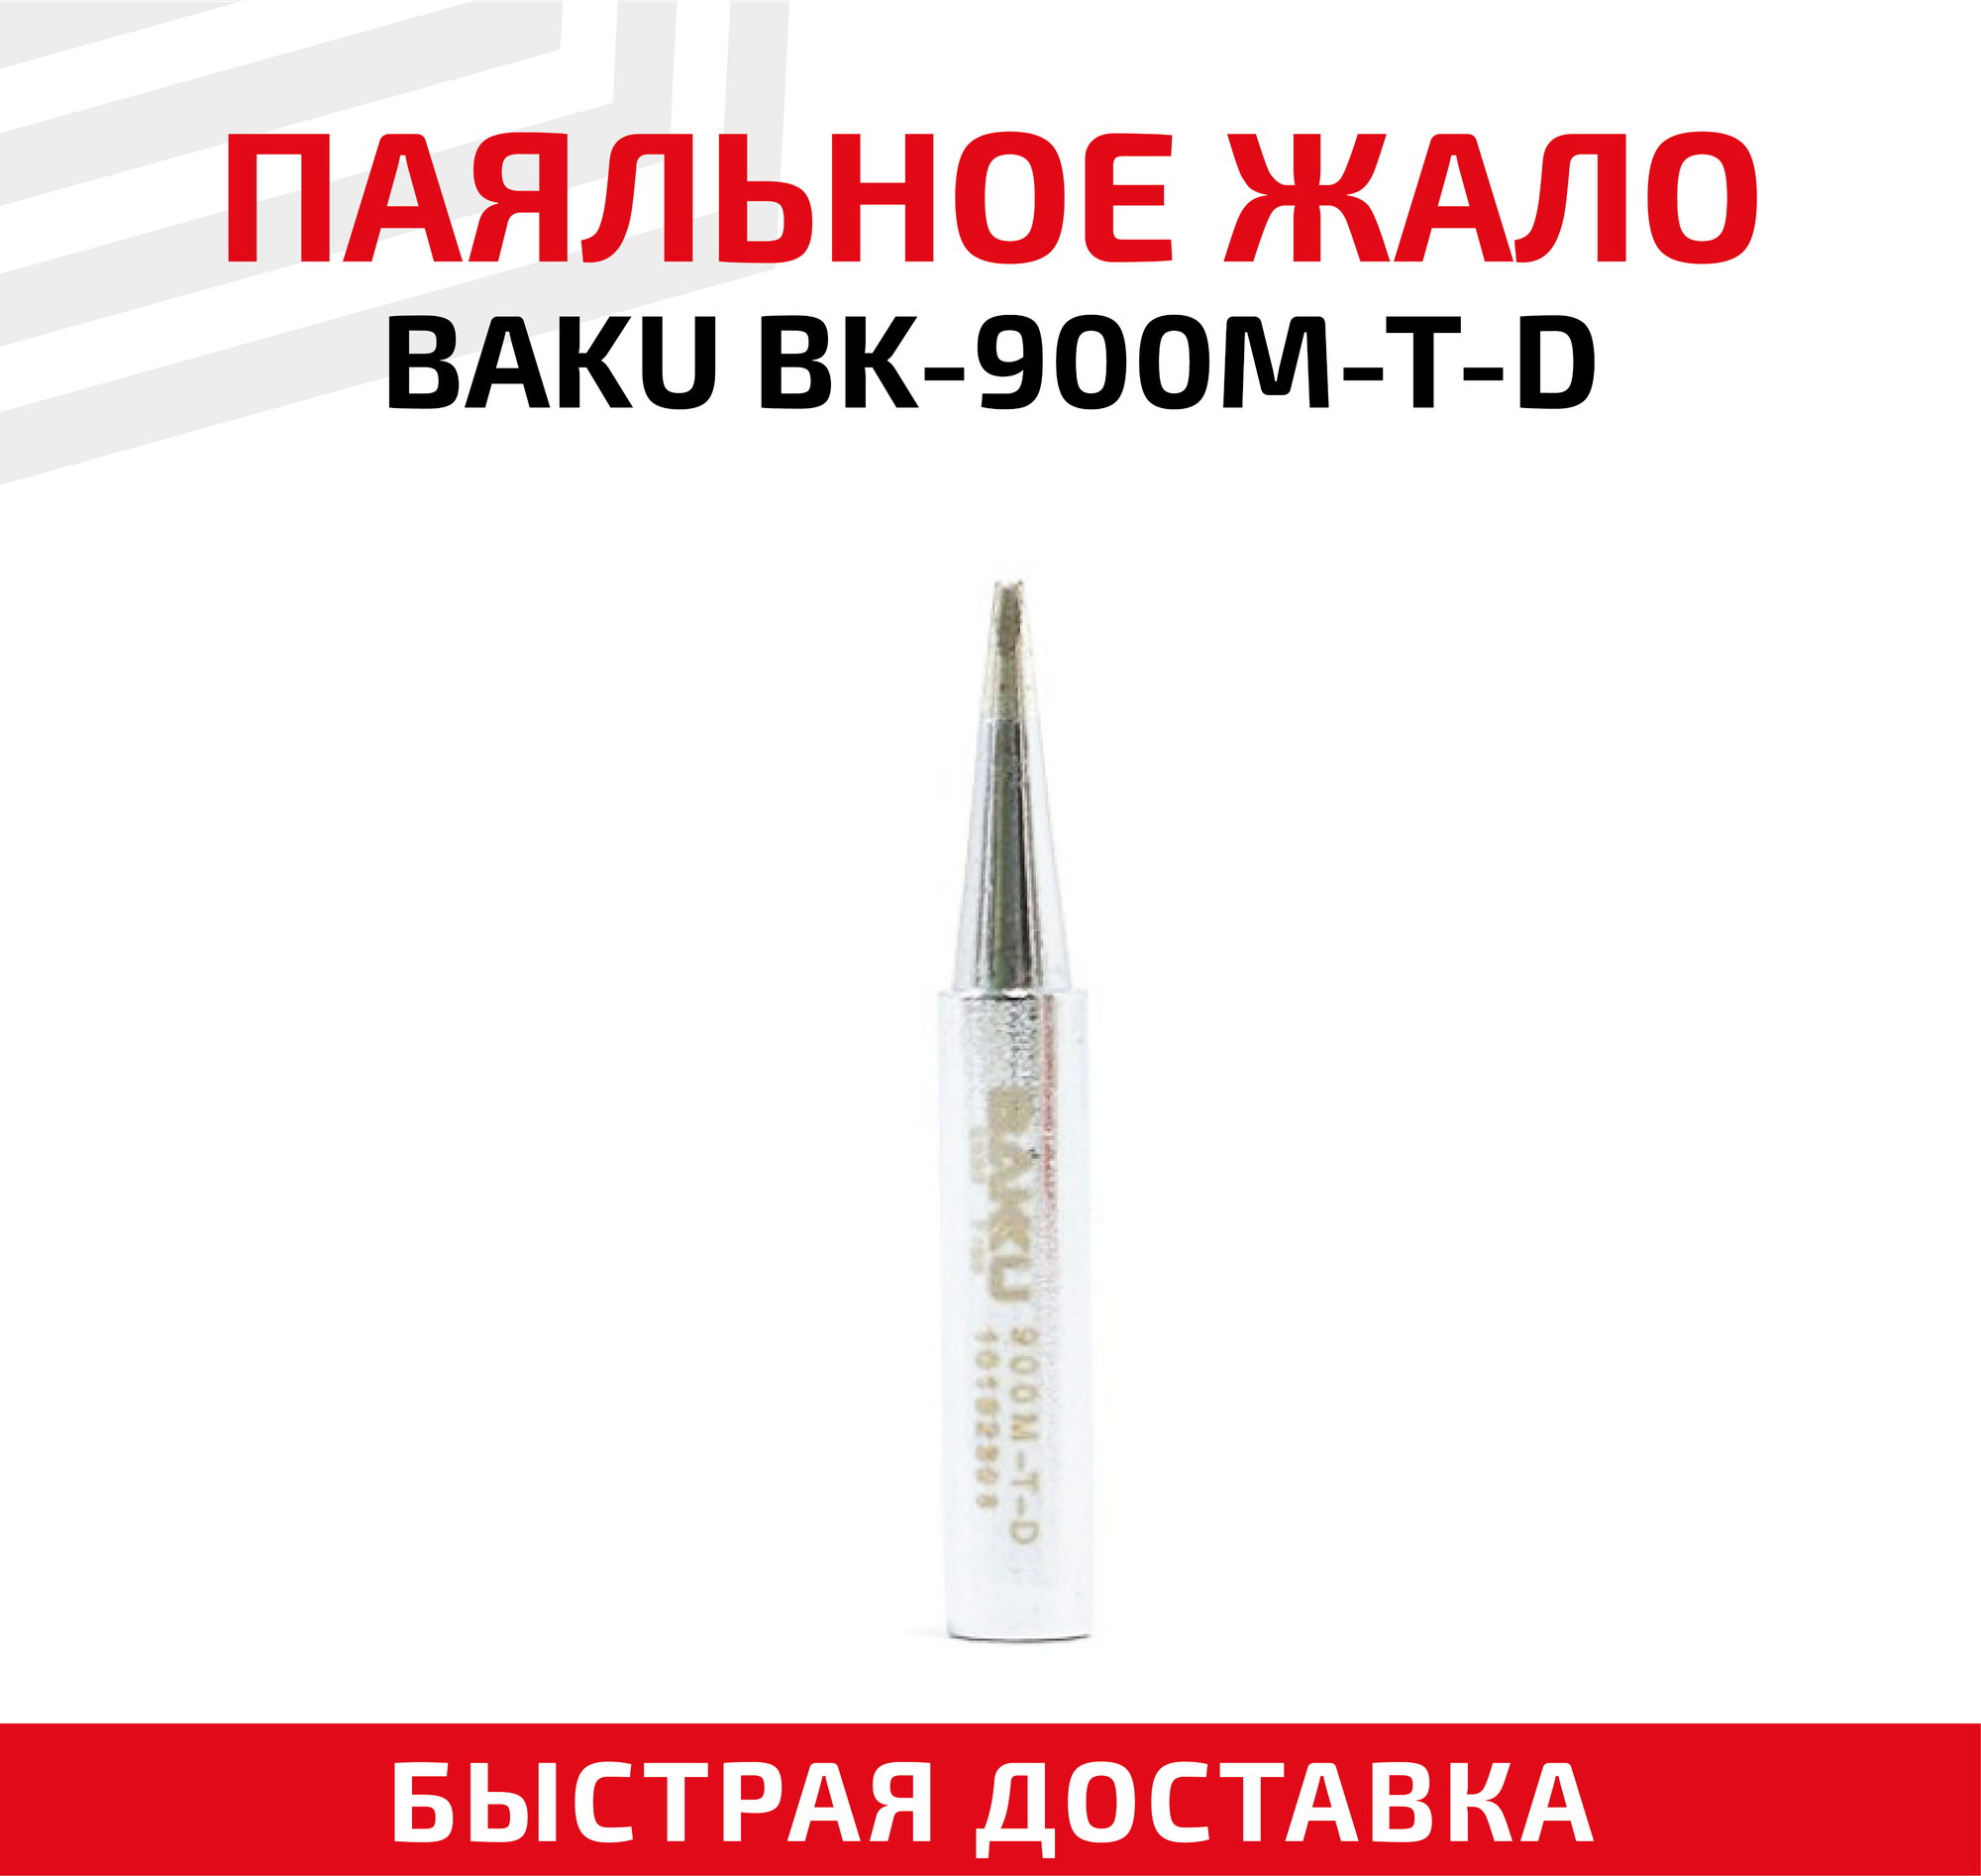 Жало (насадка наконечник) для паяльника (паяльной станции) Baku BK-900M-T-D коническое